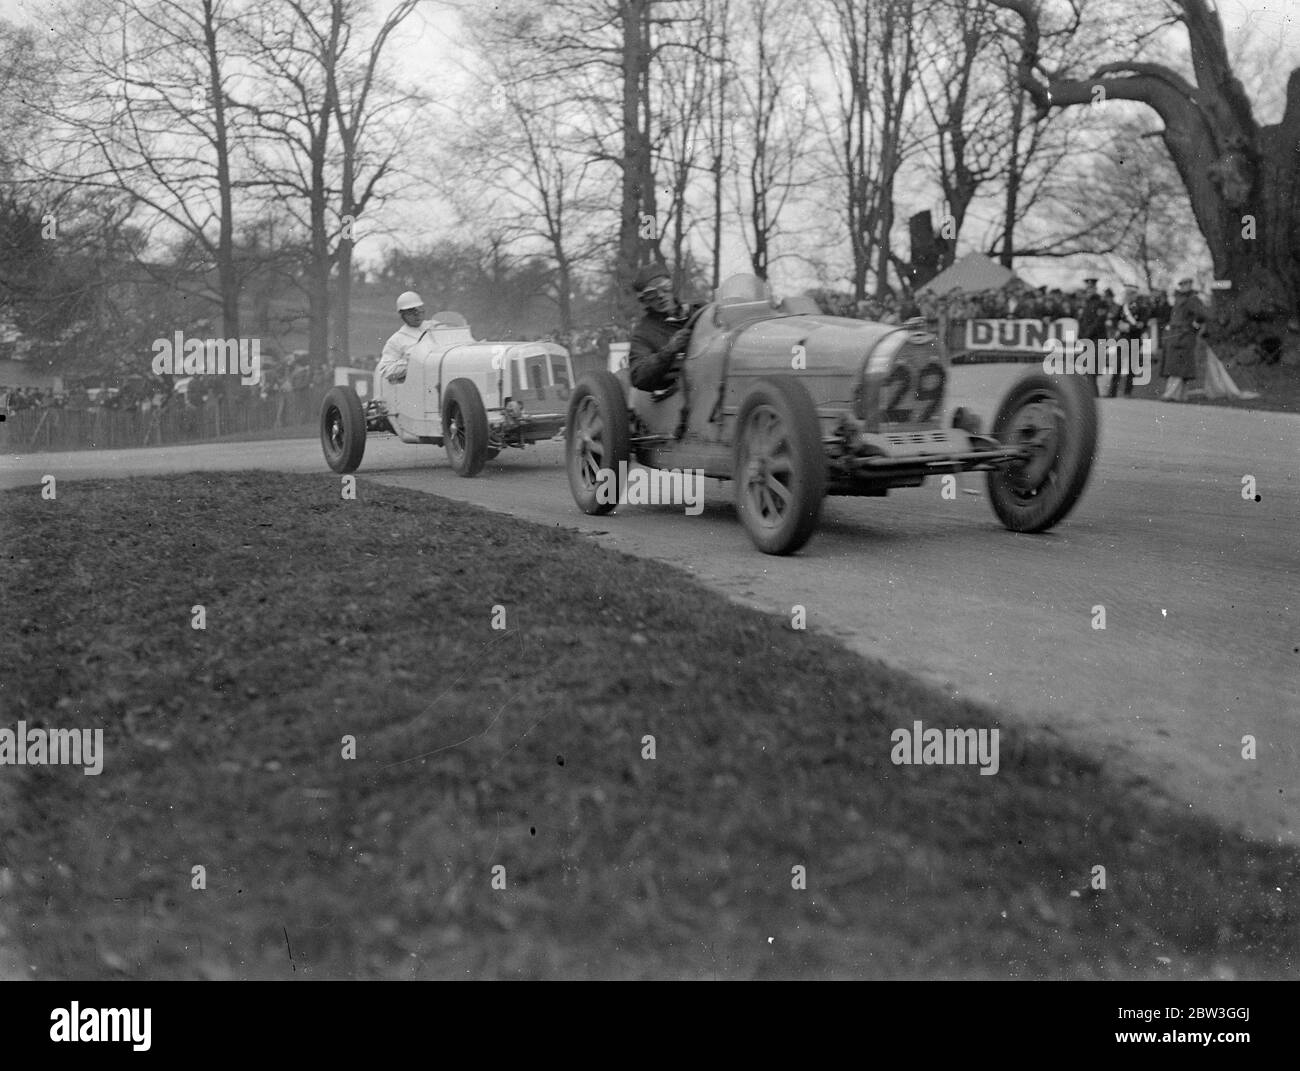 Seaman remporte la première grande course de la saison moyenne 66 . 33 mph . Conduire sa Maserati à une vitesse moyenne de 66 milles à l'heure , RJB Seaman The British Empire Trophy Race , première course de route classique britannique de la saison à Donington Park , près de Derby . P G Fairfield ( E R A ) était deuxième et D G Everitt ( Alfa Romeo ) troisième . Vingt-sept des plus grands pilotes de course de Grande-Bretagne ont participé et vingt mille spectateurs ont assisté à la course . Photos , N S Brocklebank de Bugatti et Cyril Paul , dans ERA à la épingle à cheveux . 4 avril 1936 Banque D'Images